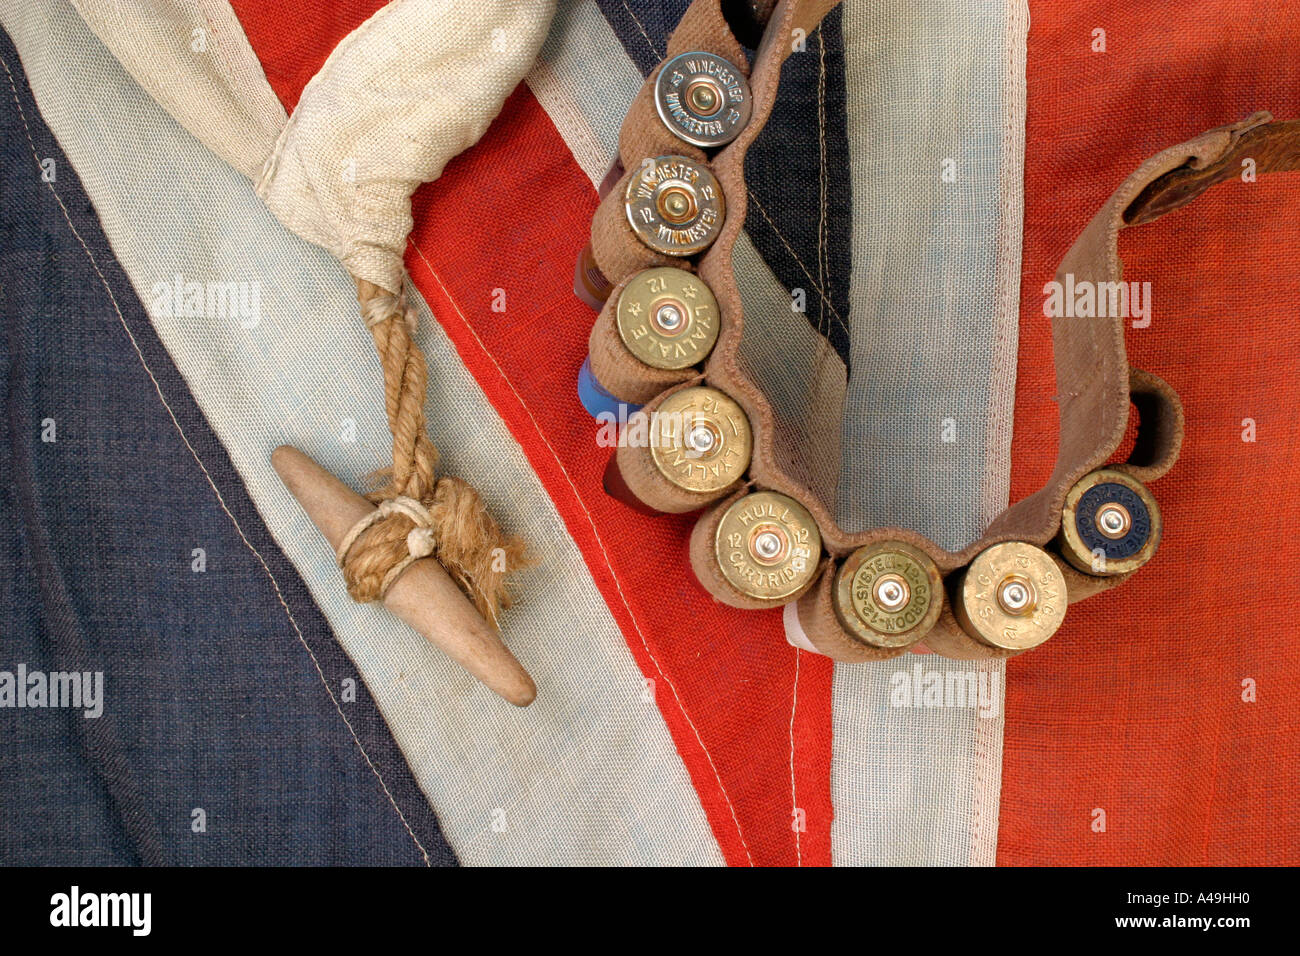 union jack british flag with cartridge belt and ammunition shotgun cartridges Stock Photo